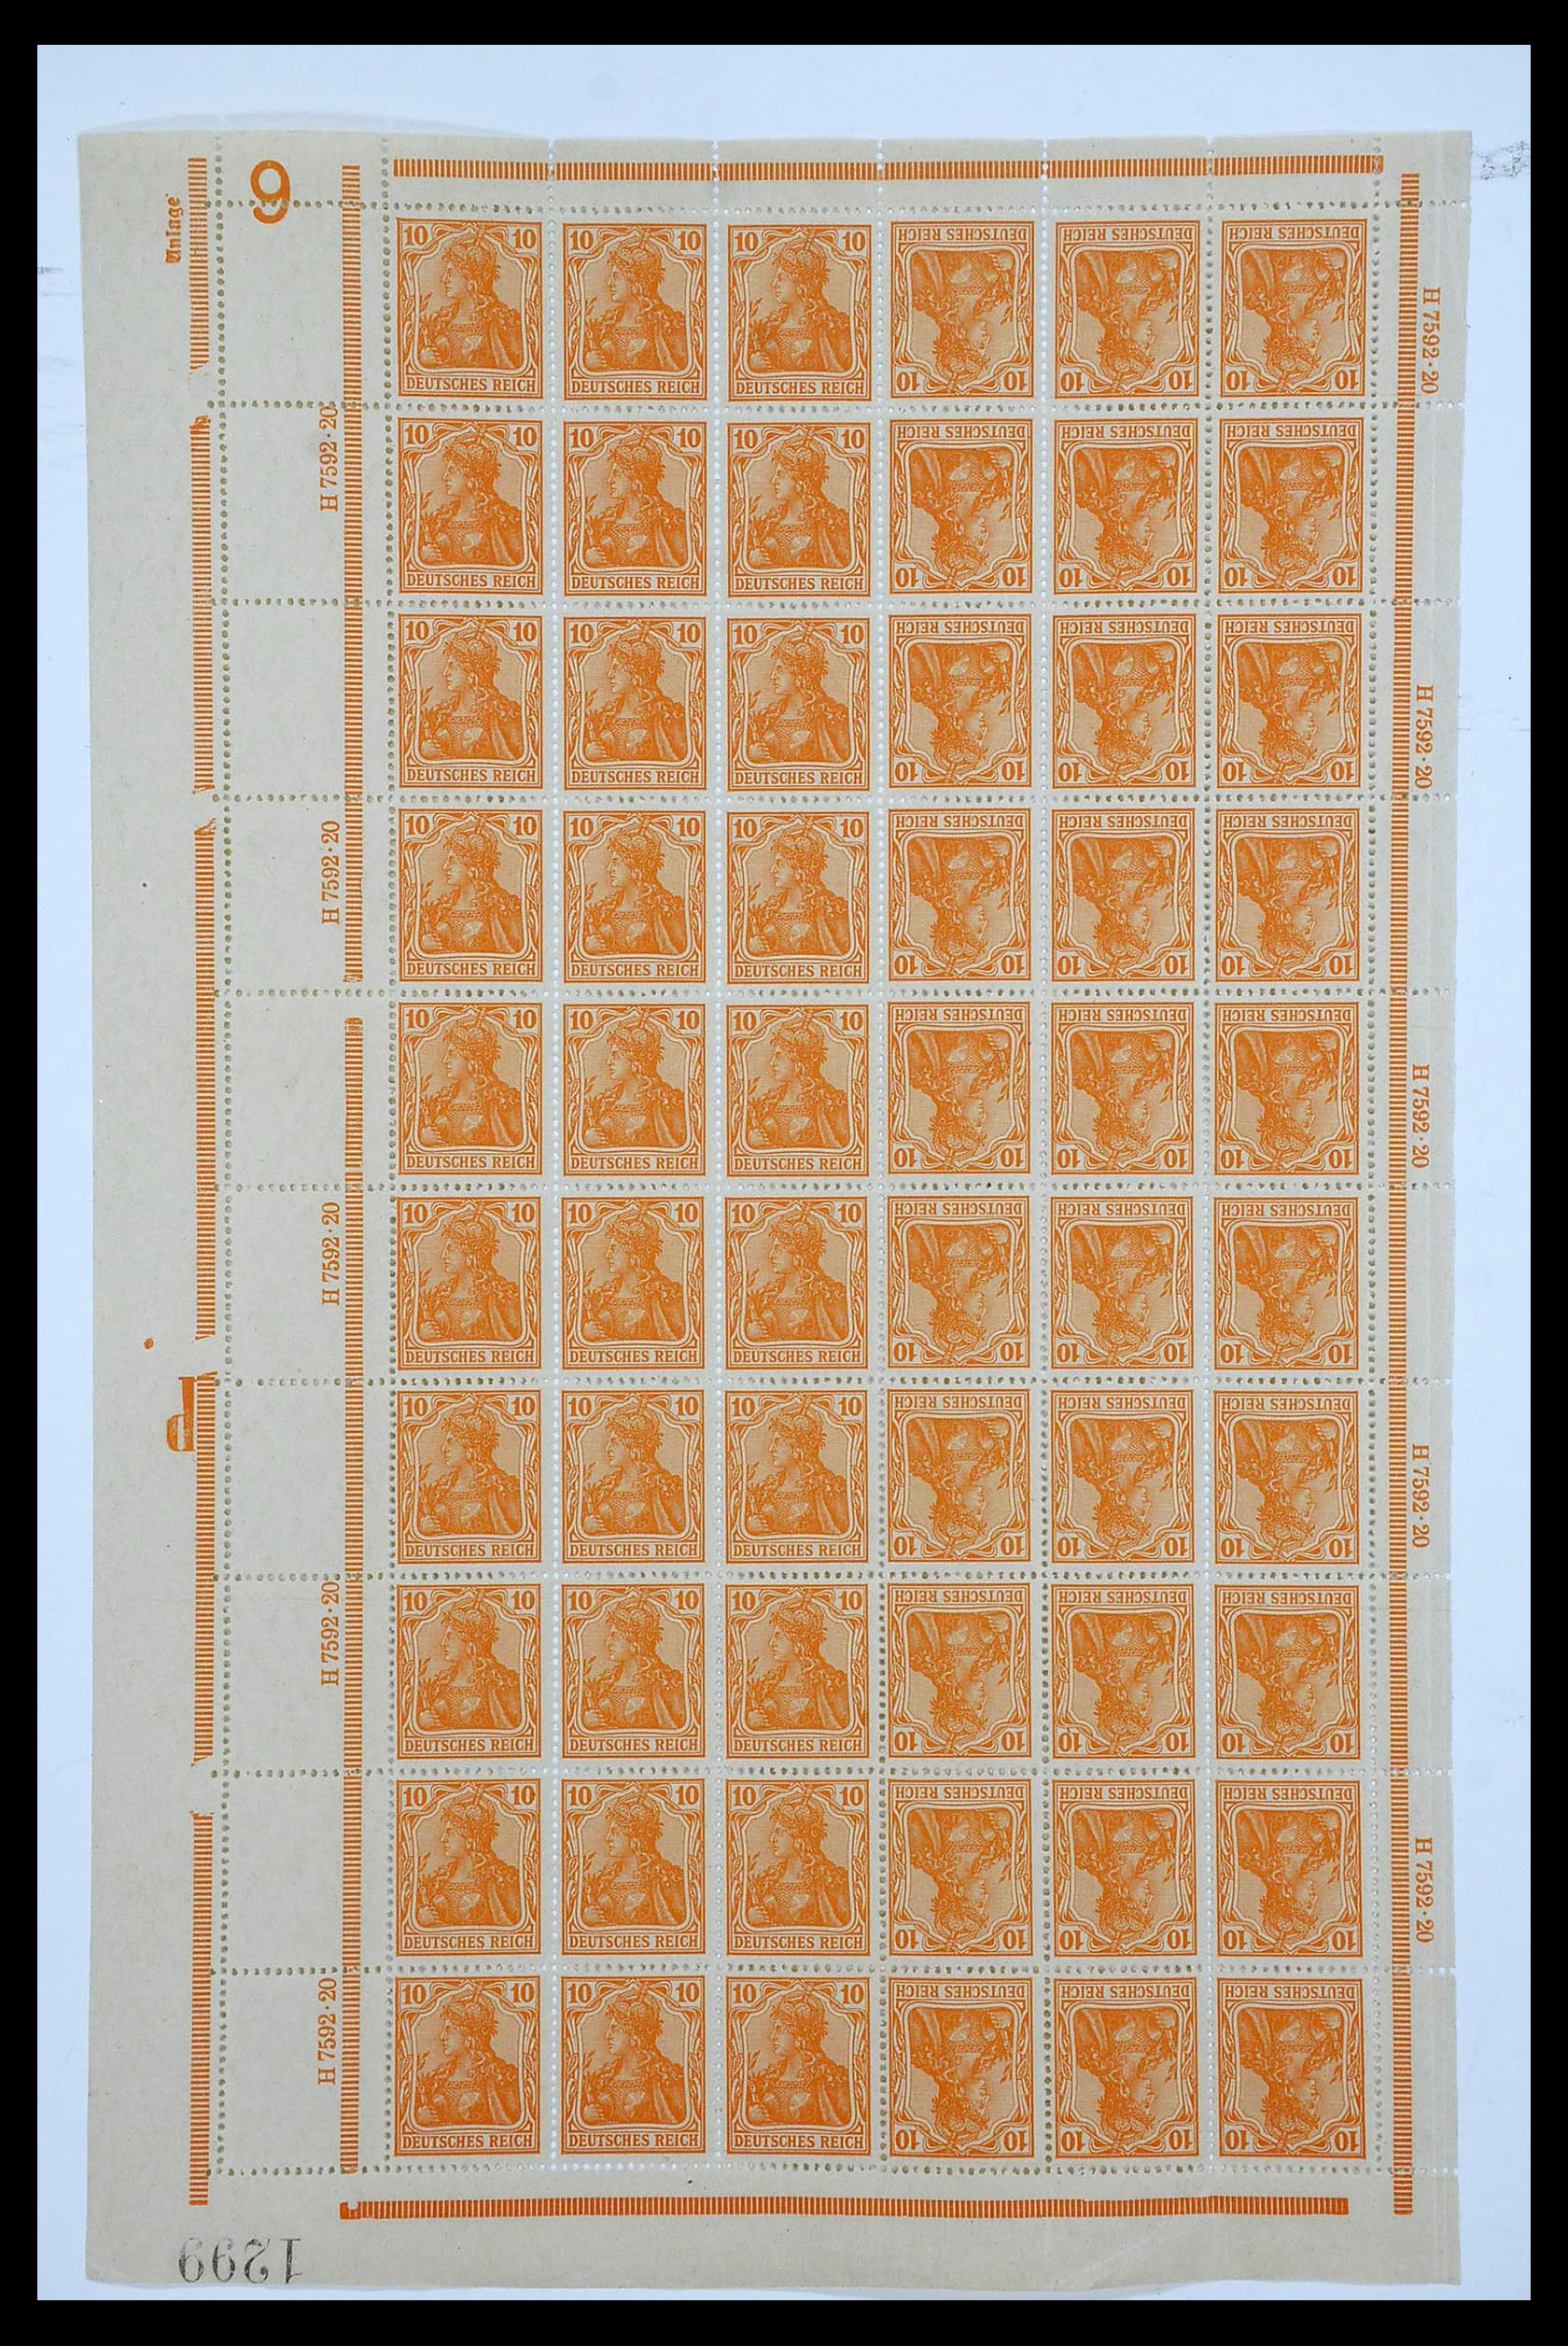 34164 001 - Stamp collection 34164 German Reich Markenheftchenbogen 1933-1942.